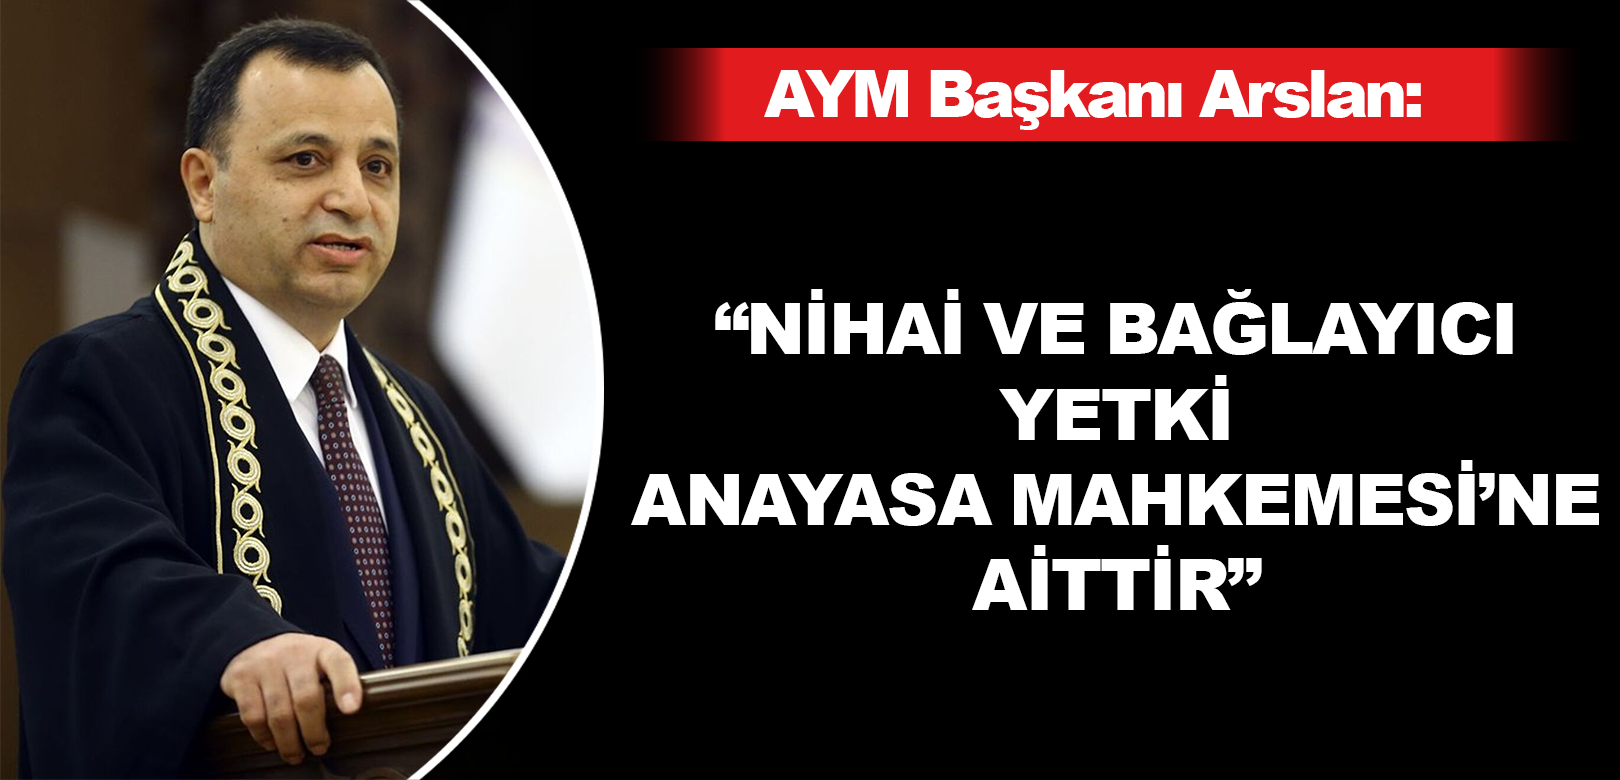 AYM Başkanı Arslan'dan yargı krizi tartışmalarına yorum: Nihai ve bağlayıcı karar Anayasa Mahkemesi'ne aittir